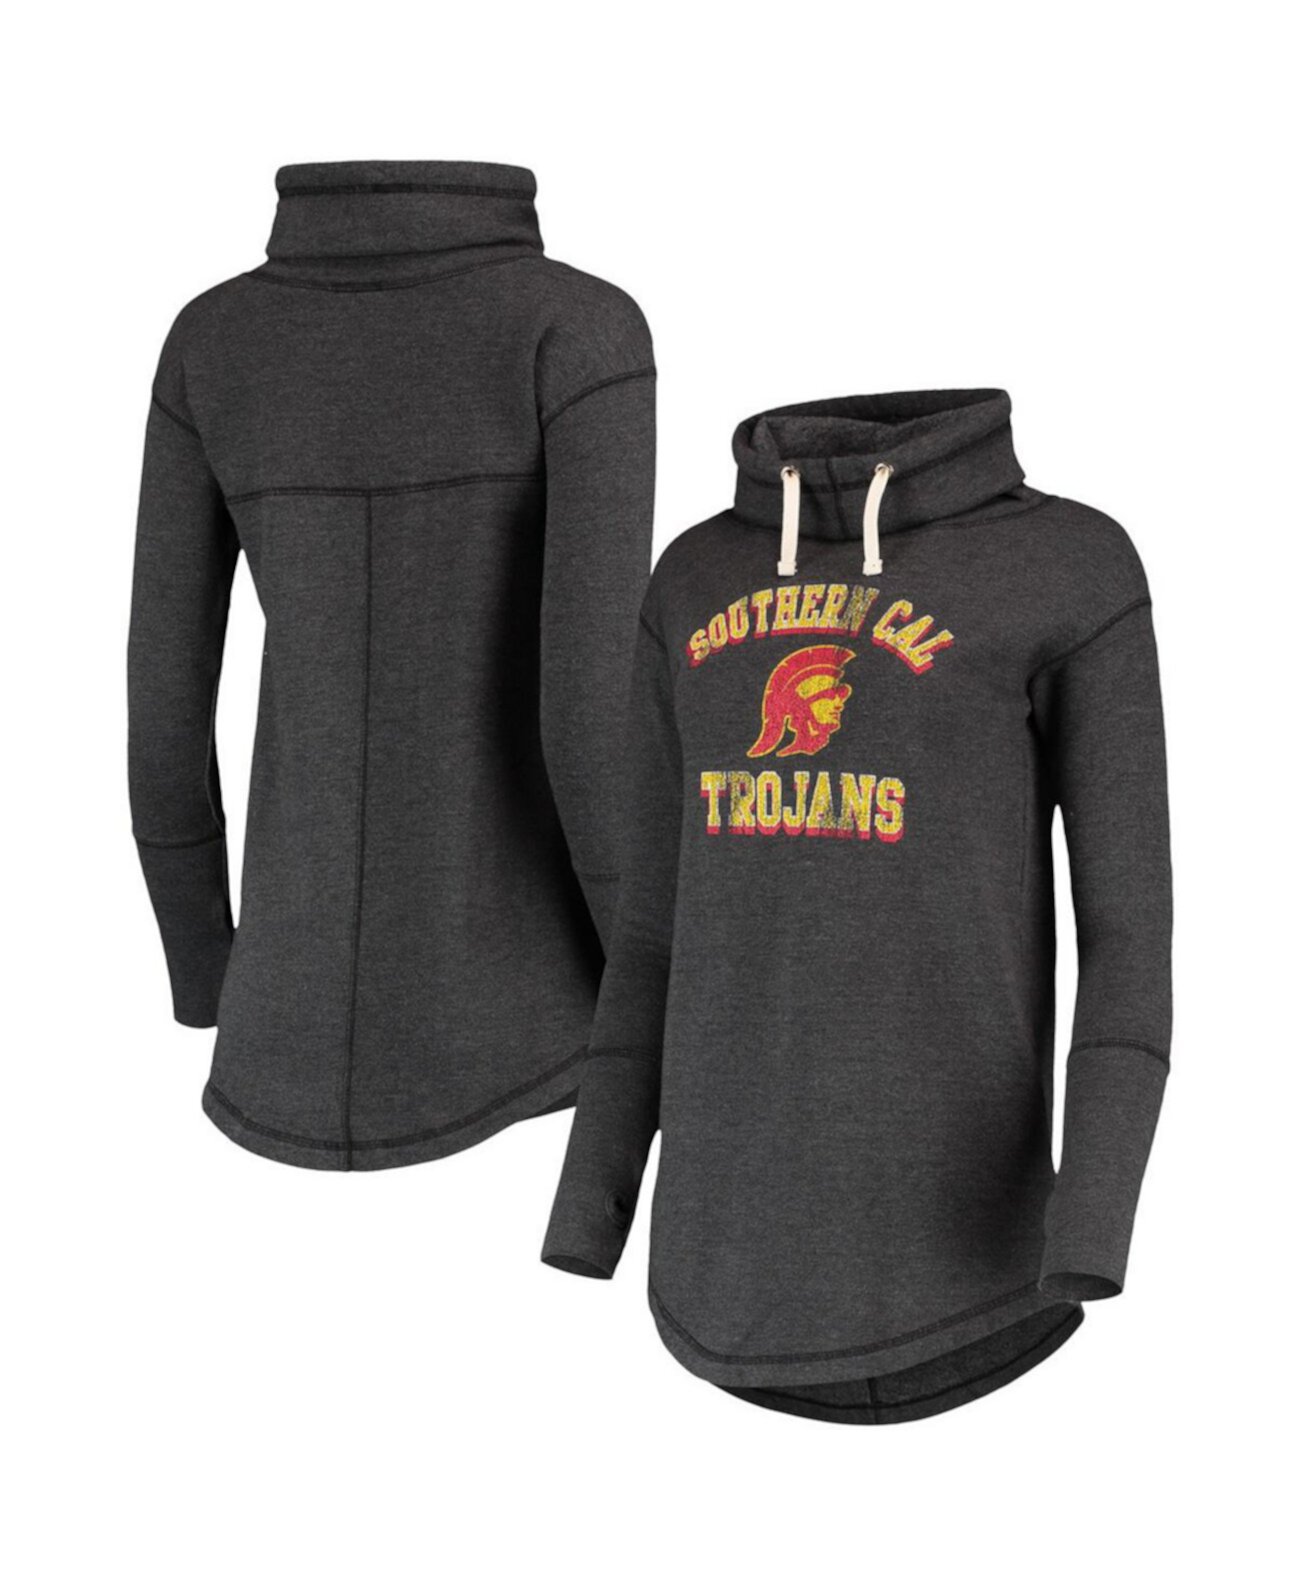 Женская флисовая толстовка с воротником-воронкой черного цвета USC Trojans Original Retro Brand